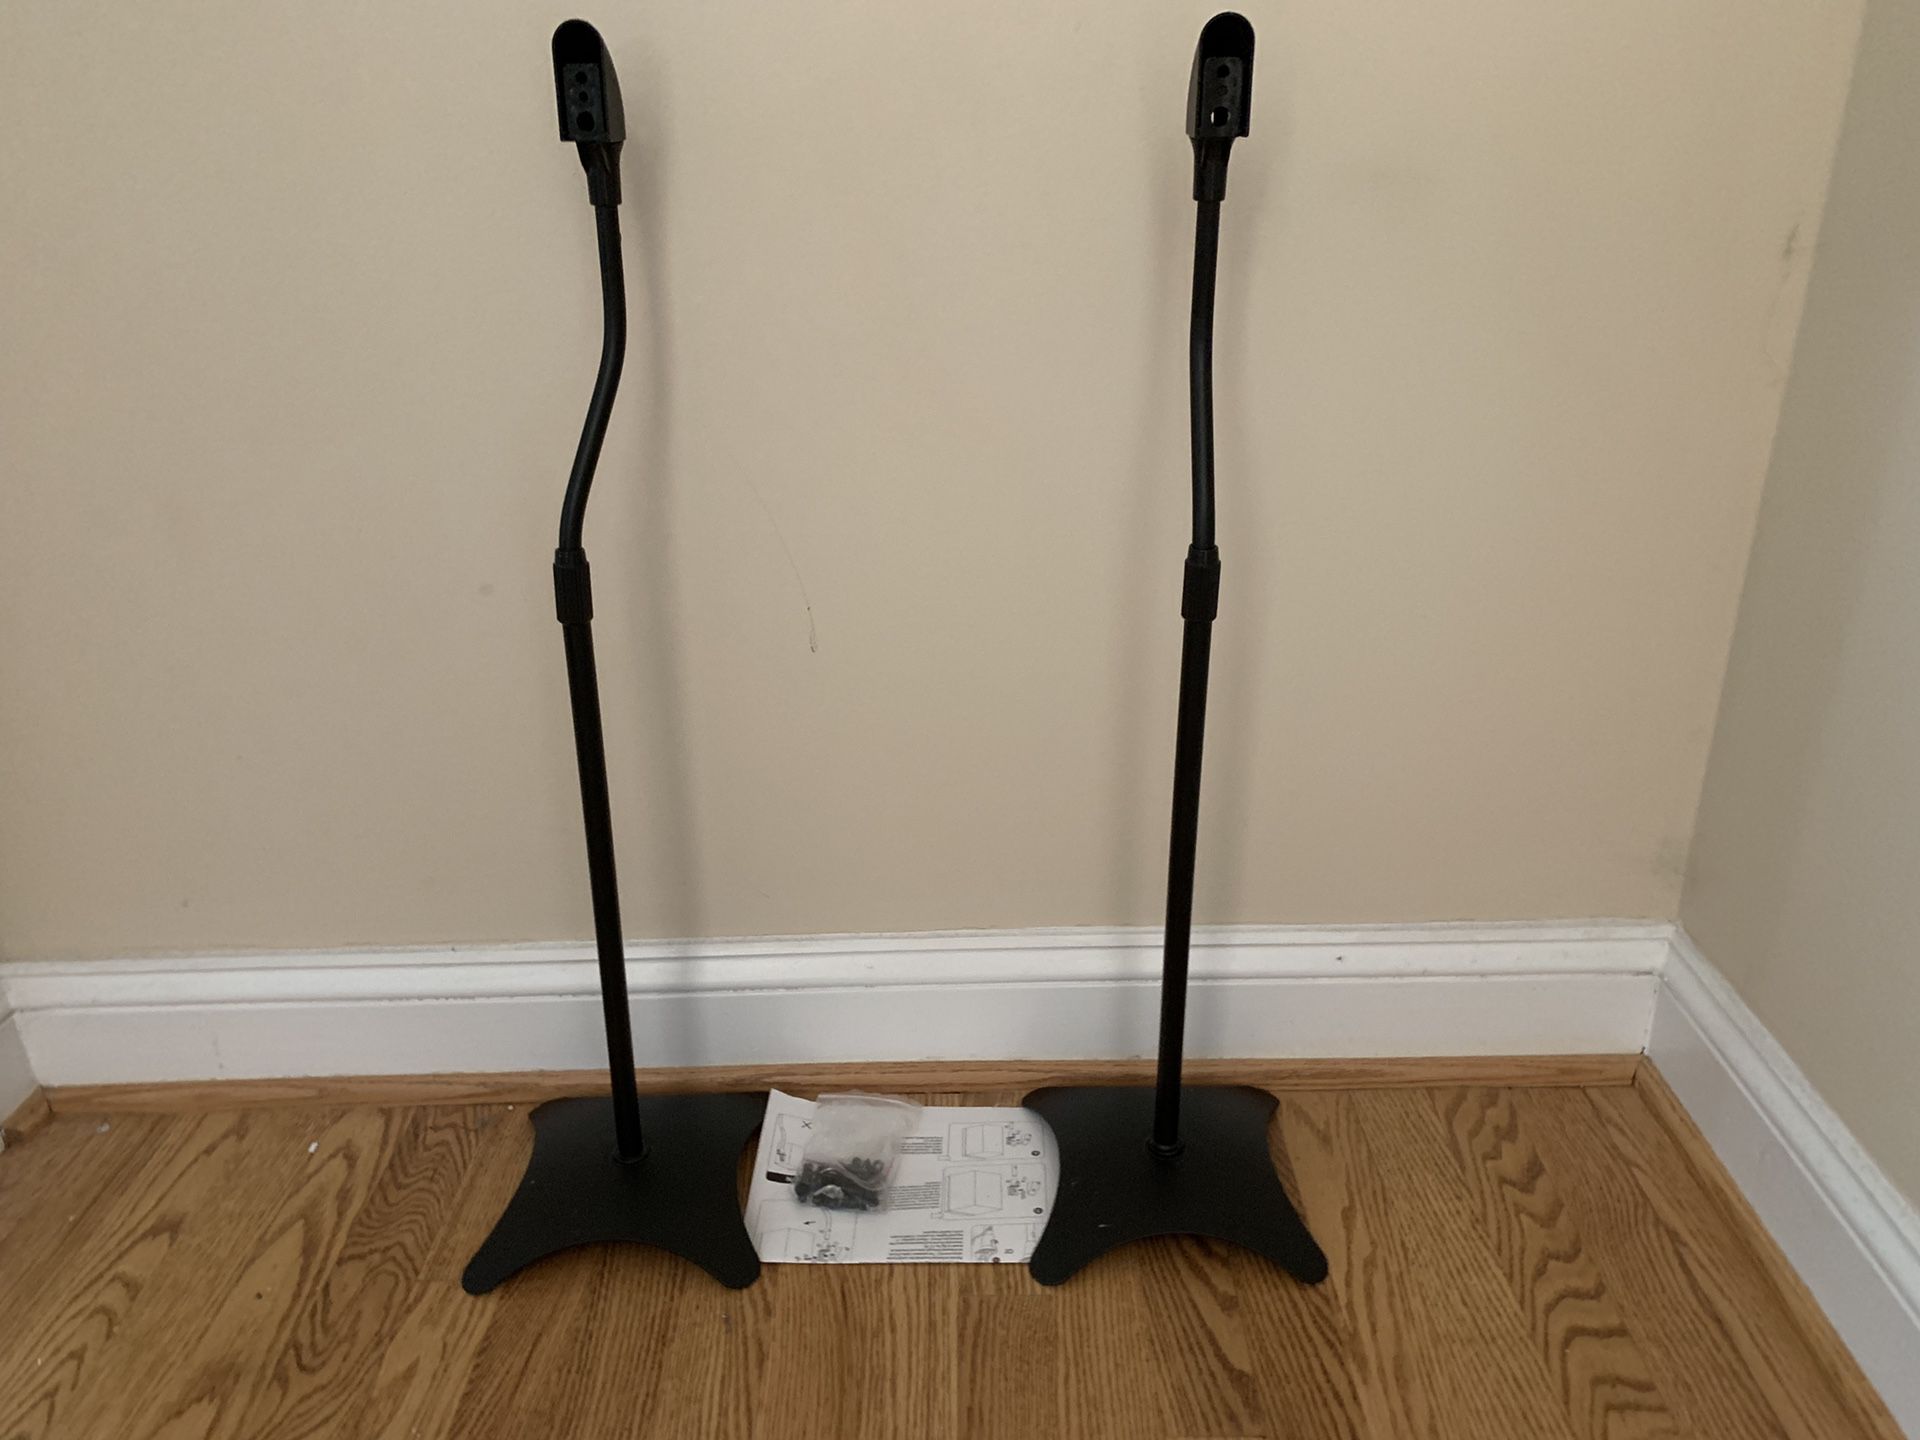 Pair of Metal Speaker Stands Height Adjustable (Black, 1 Pair)